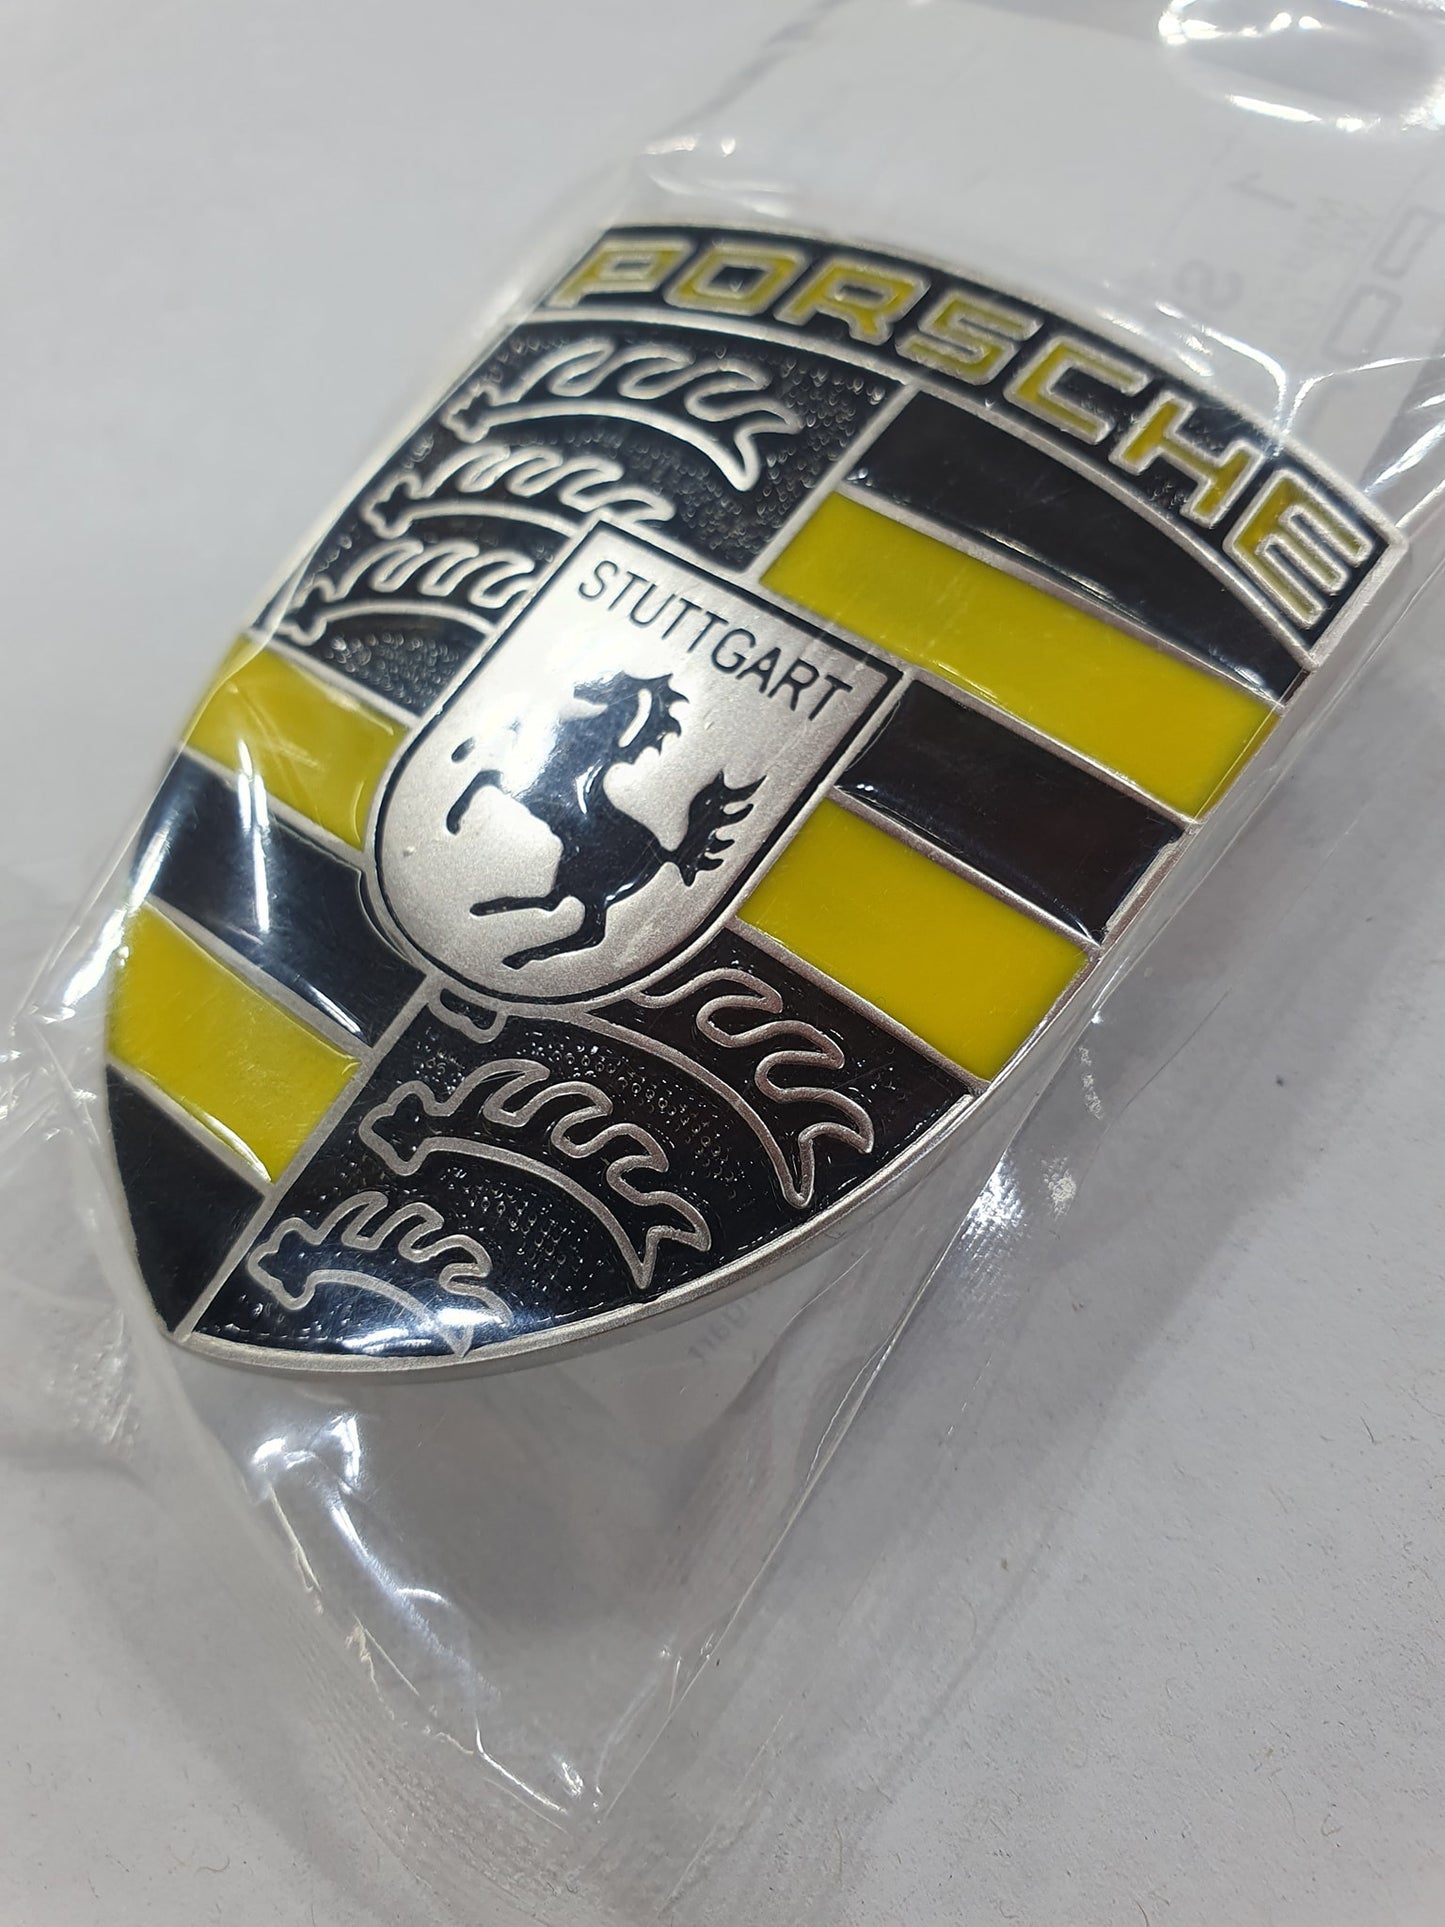 Porsche Bonnet Badge Crest Custom 1 off Exclusive Design Colours Yellow